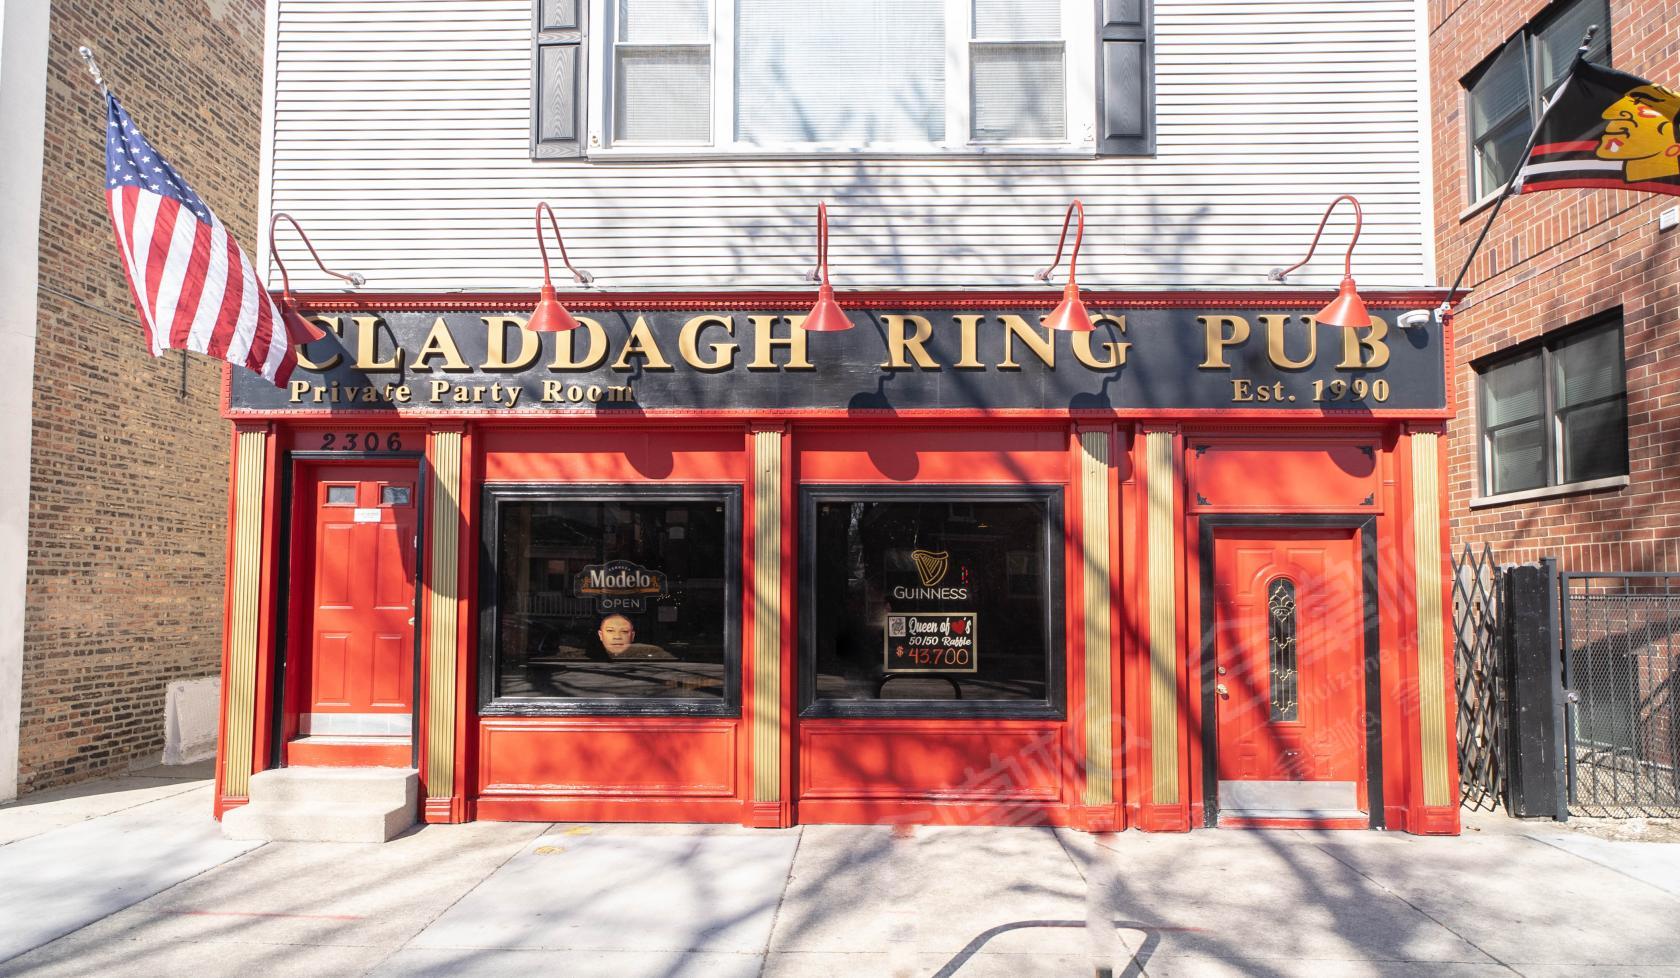 Claddagh Ring Pub